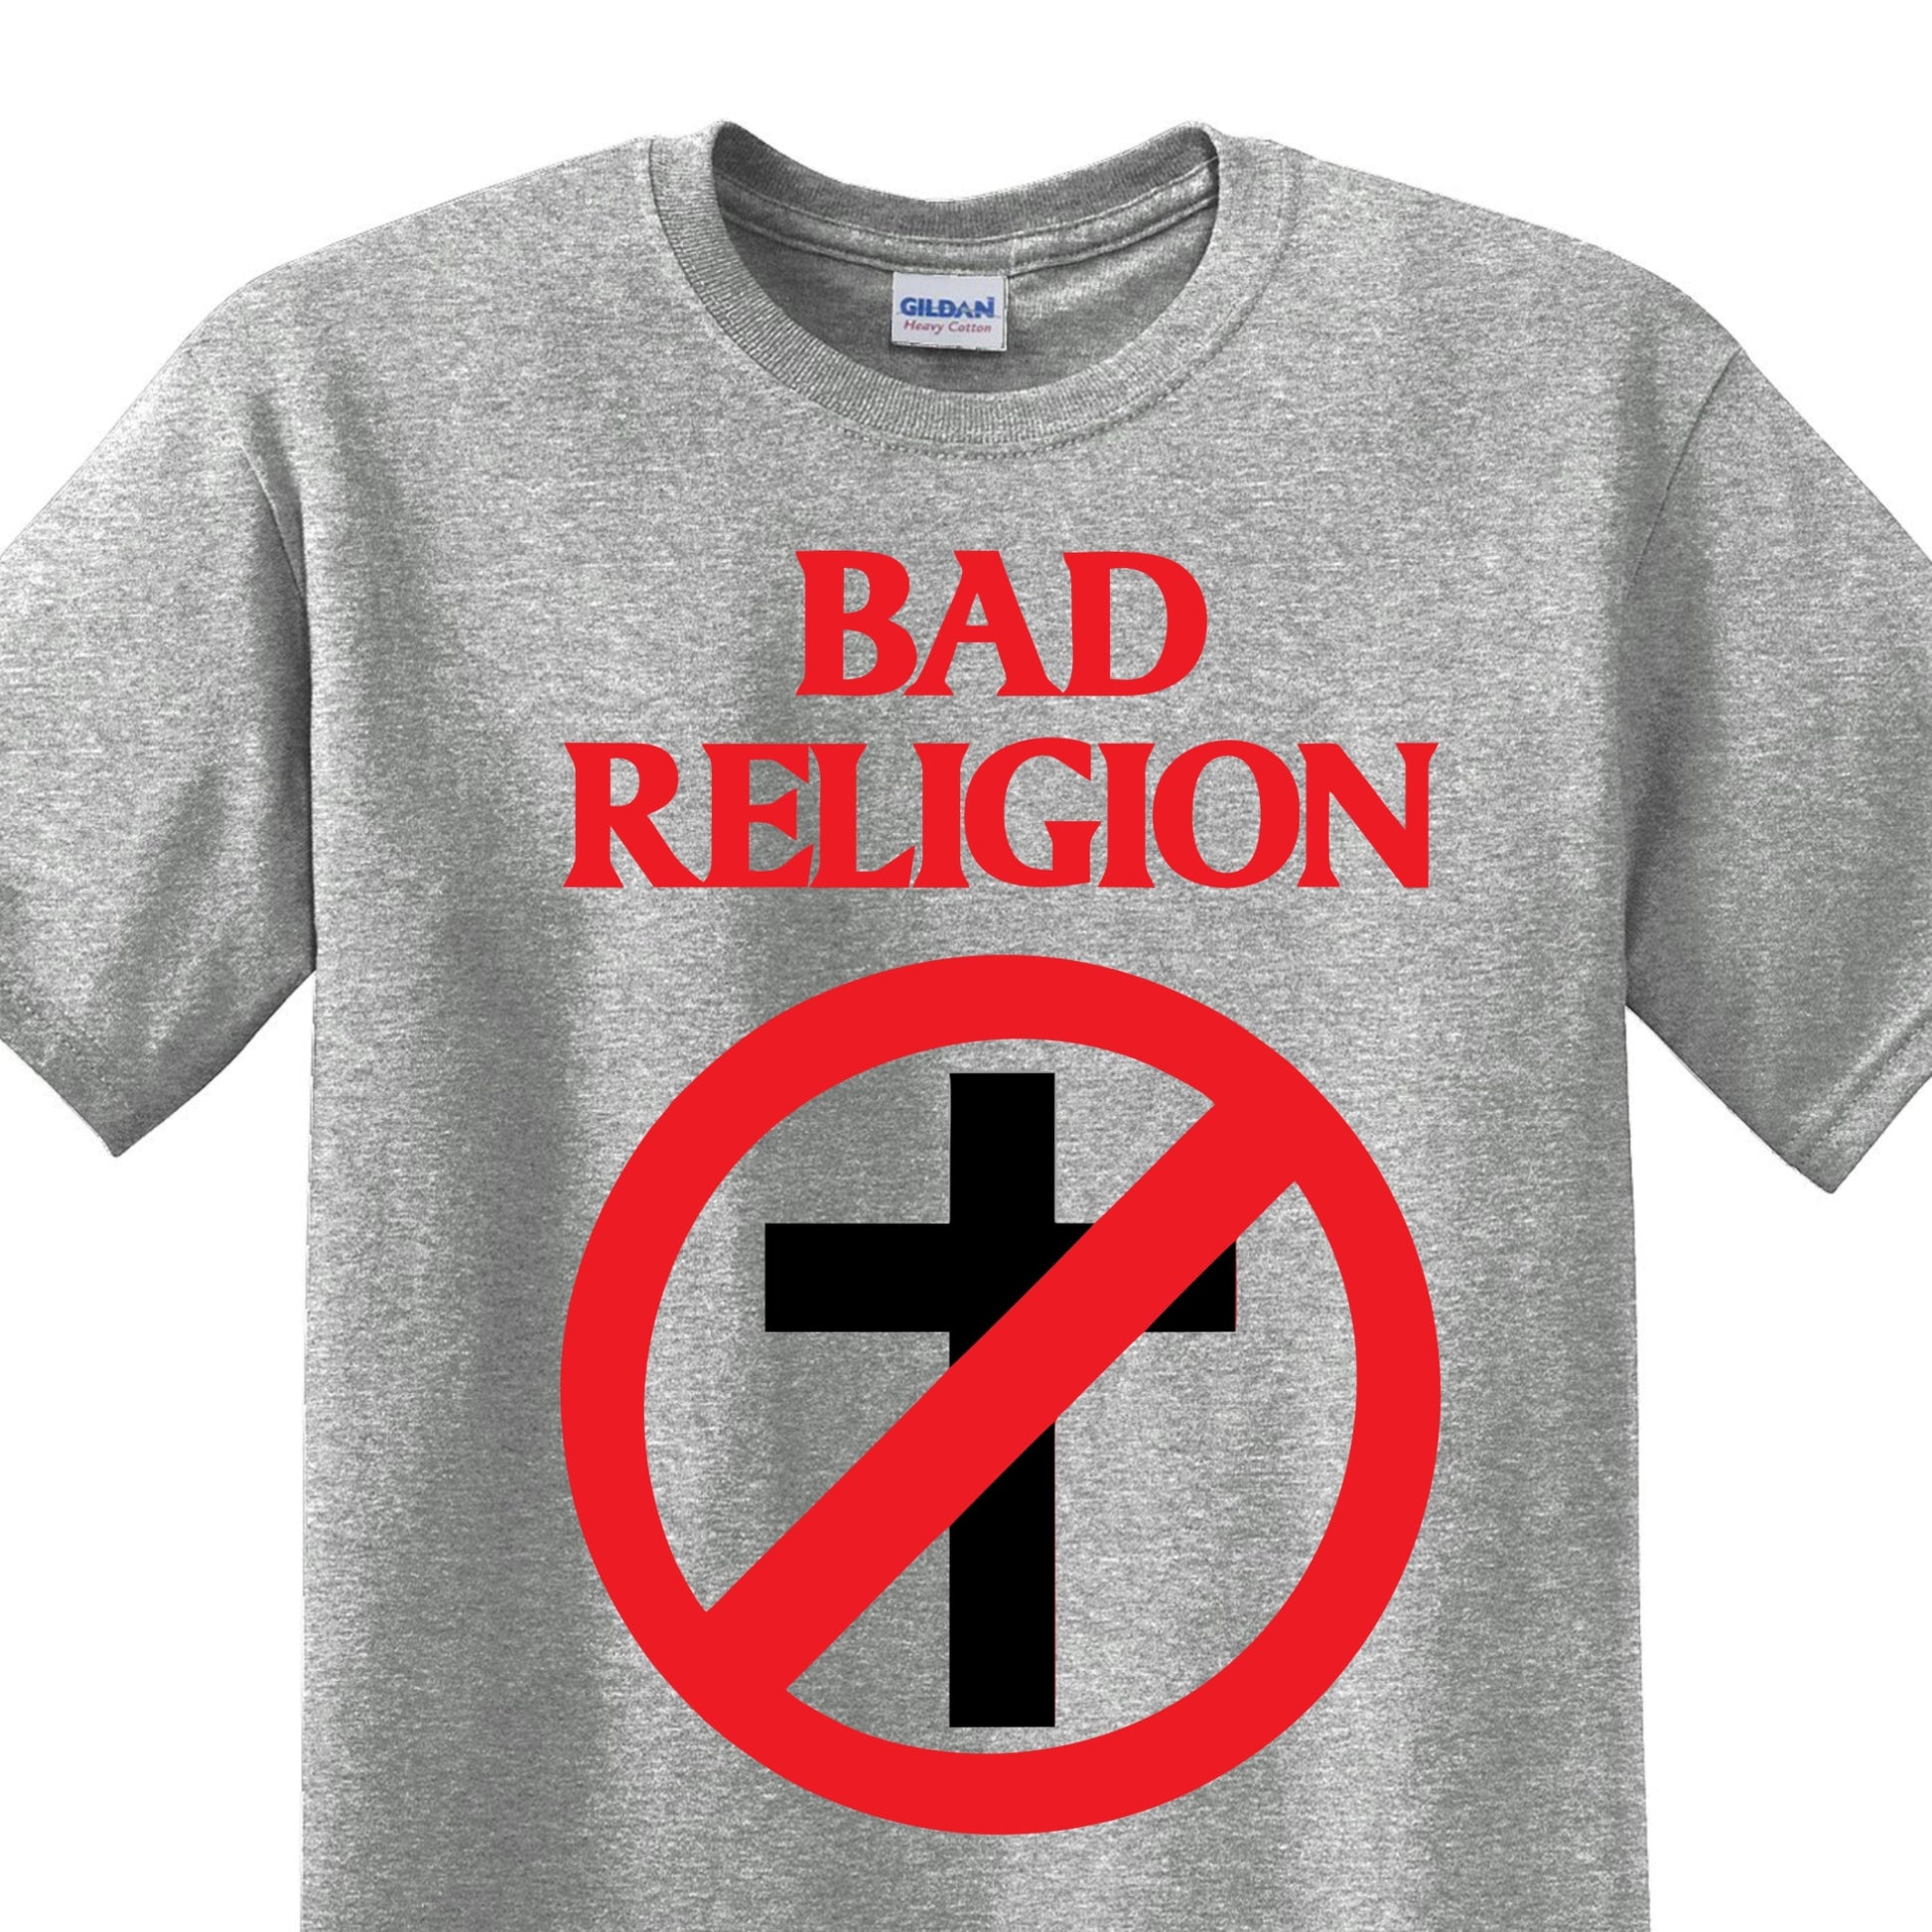 Radical Band  Men's Shirts - Bad Religion (Gray) - MYSTYLEMYCLOTHING